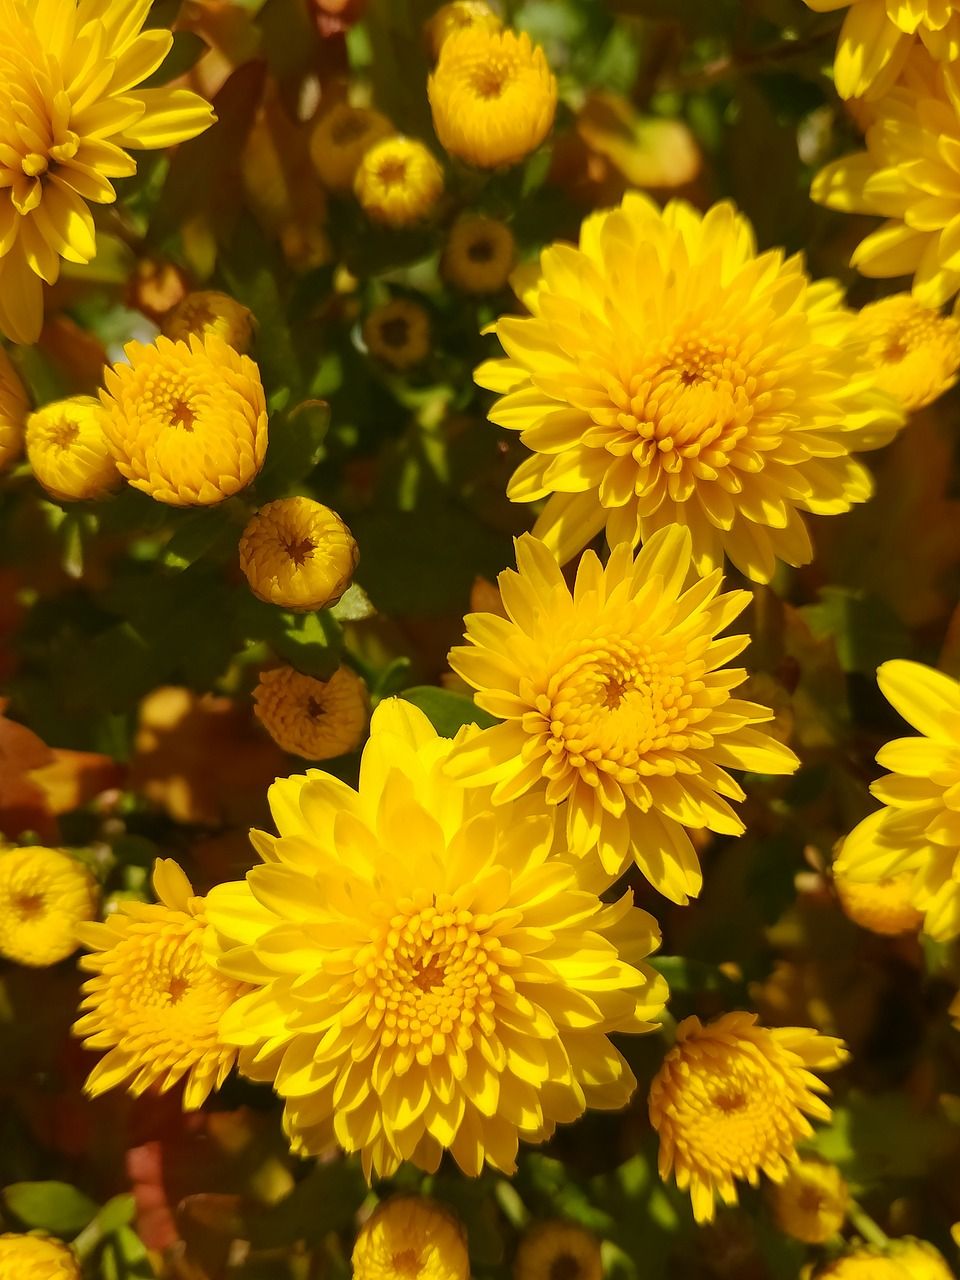 Nếu bạn yêu thích hoa cúc vàng nhỏ xinh, hãy thử tìm kiếm các hạt giống hoa cúc mini vàng để tự tay trồng và tha hồ chiêm ngưỡng vẻ đẹp của chúng. Sẽ không gì tuyệt vời hơn khi bạn có thể tự tay tạo ra một khu vườn hoa riêng của mình.